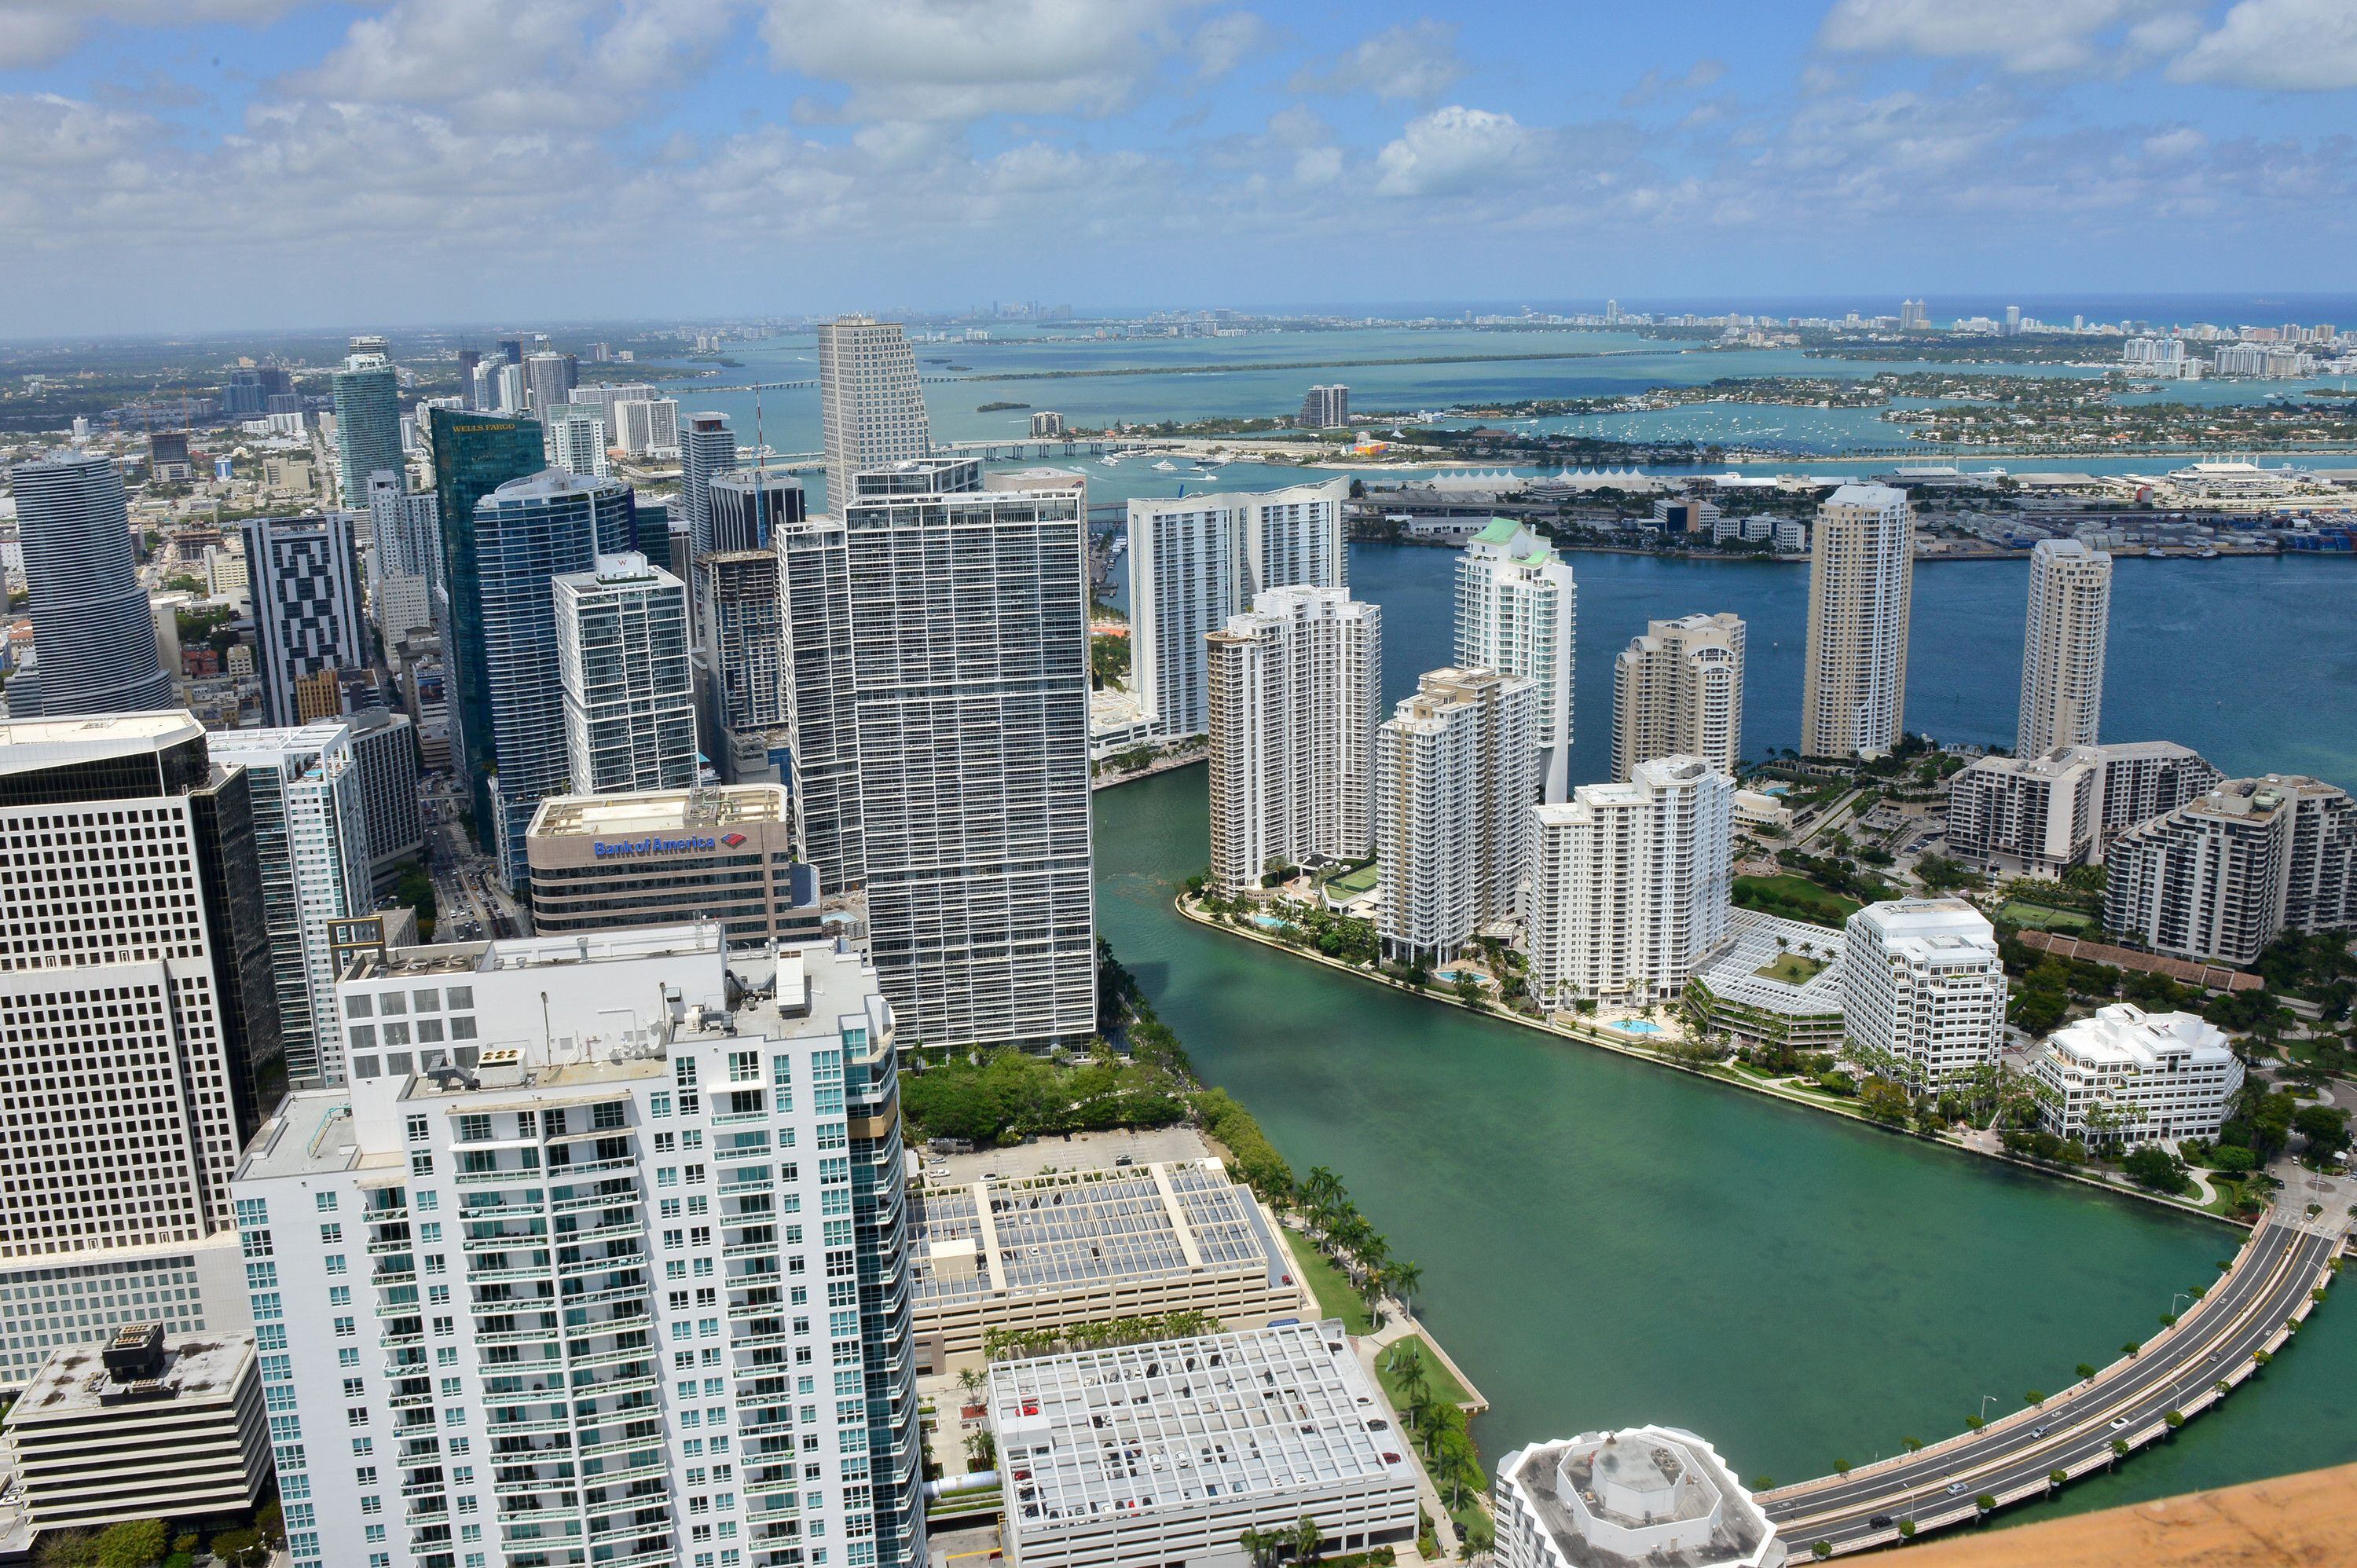 La transformación del horizonte de Miami ilustra el dinamismo de una ciudad que aspira a convertirse en un referente de innovación y sostenibilidad en la construcción de alturas. (EFE/Giorgio Viera)